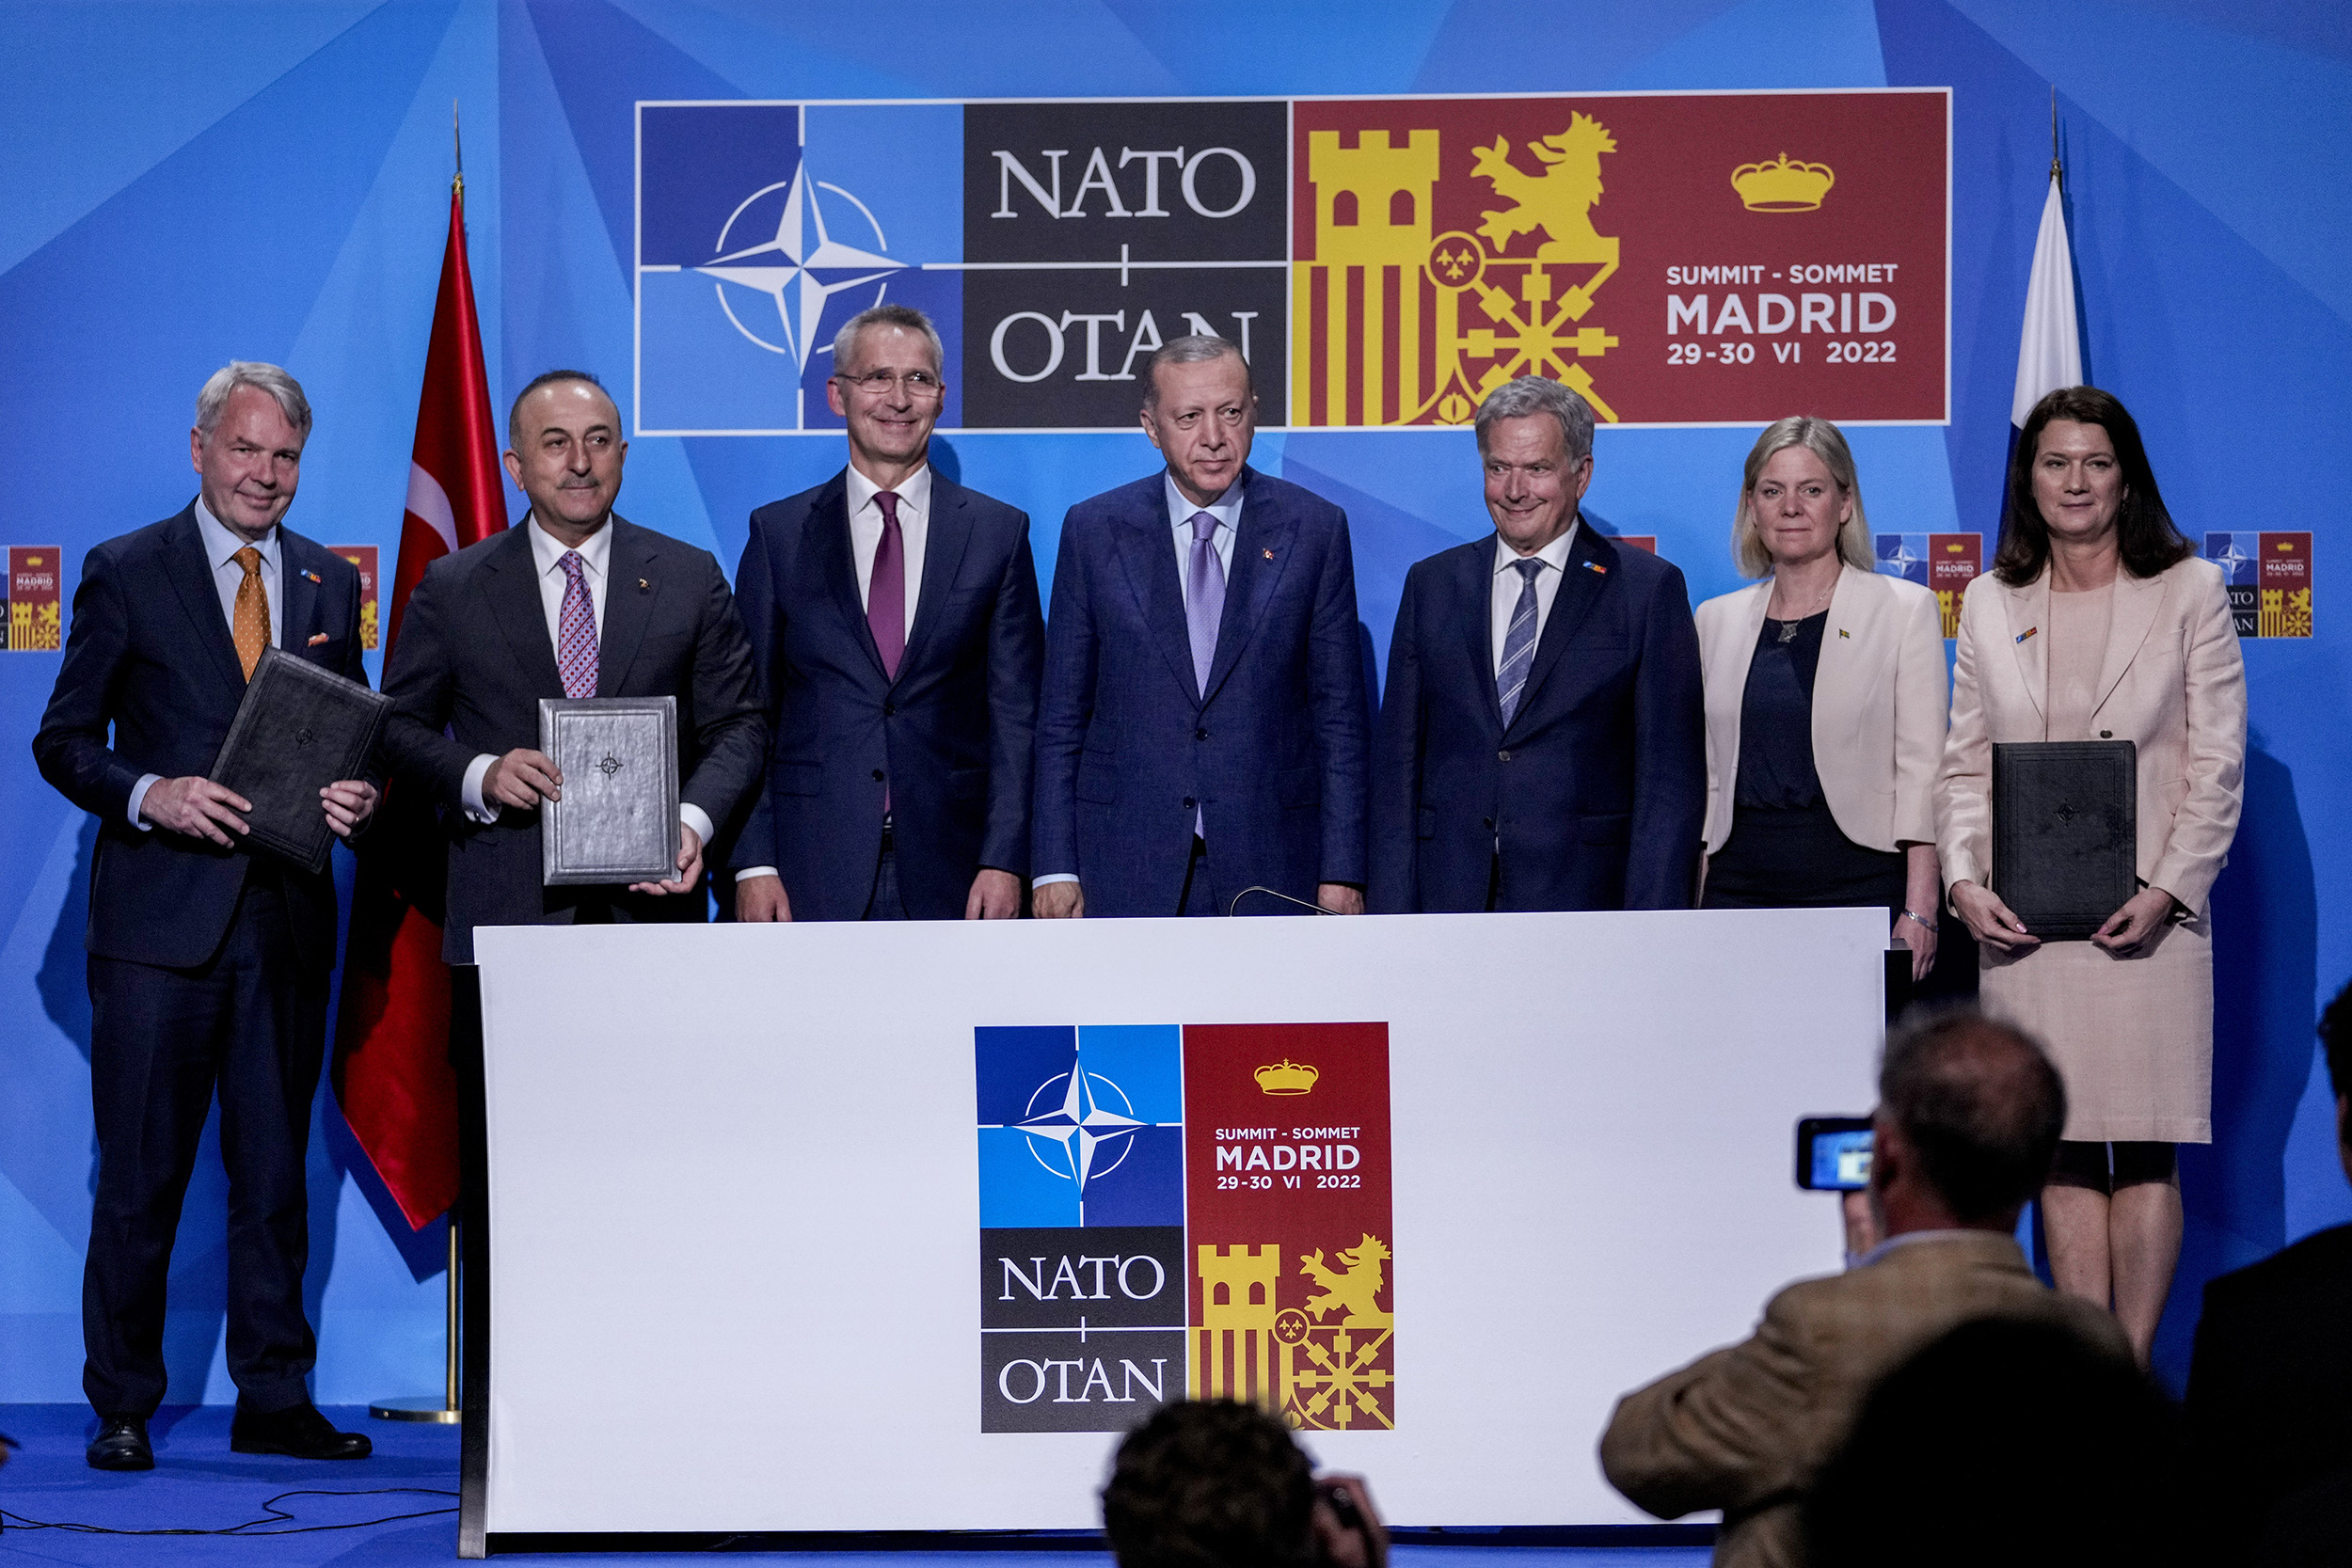 Nga takimi i Ramës me Biden e Erdogan te ftesa për Finlandën e Suedinë, çfarë ndodhi në samitin e NATO-s në Madrid